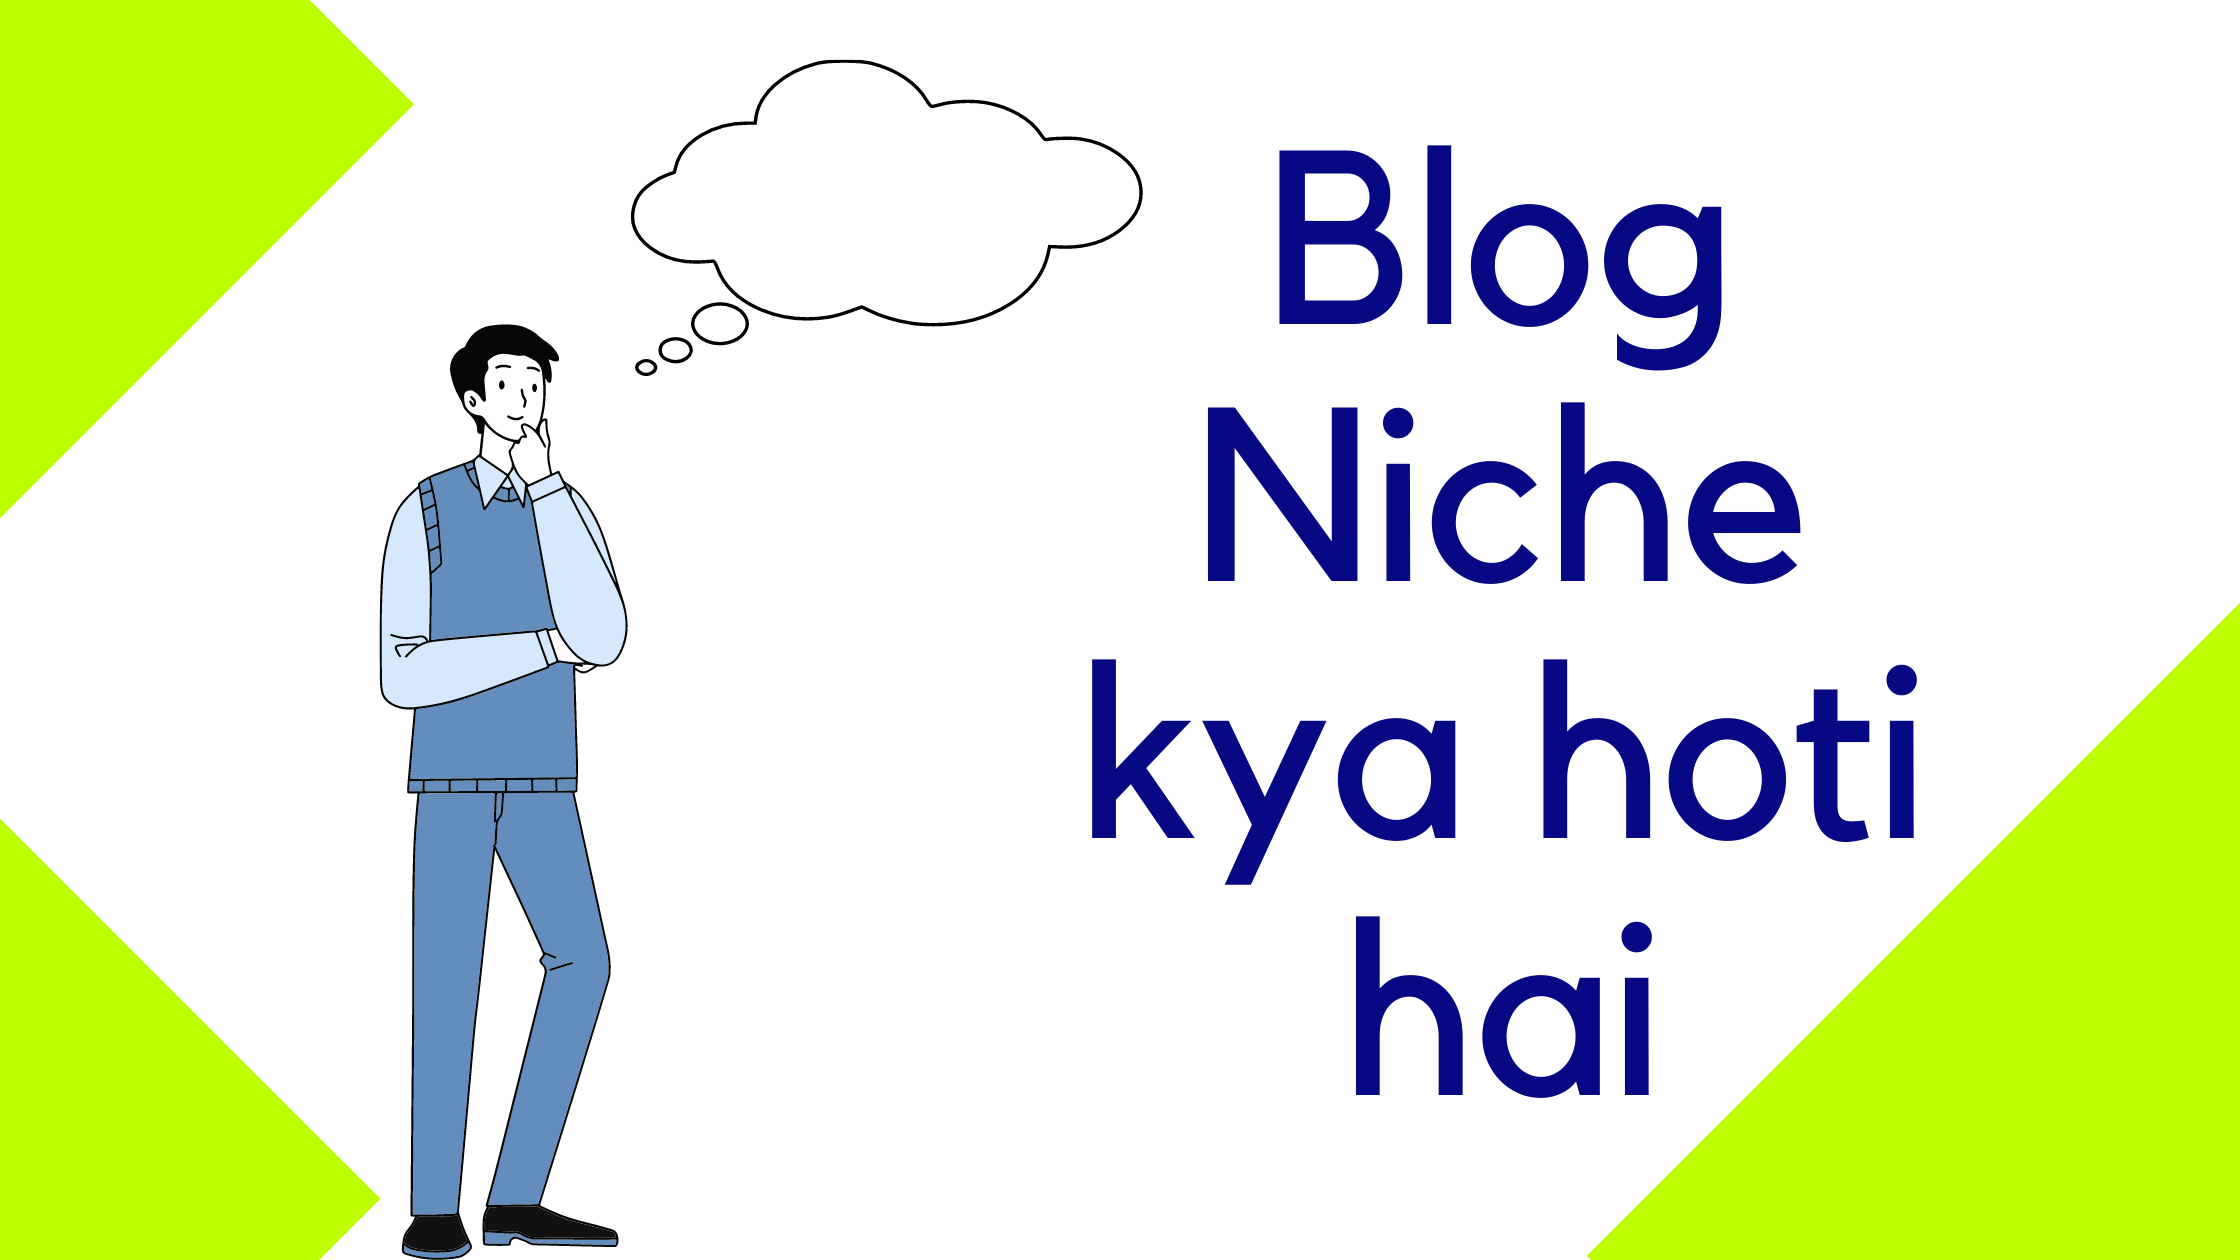 Blog Niche kya hoti hai